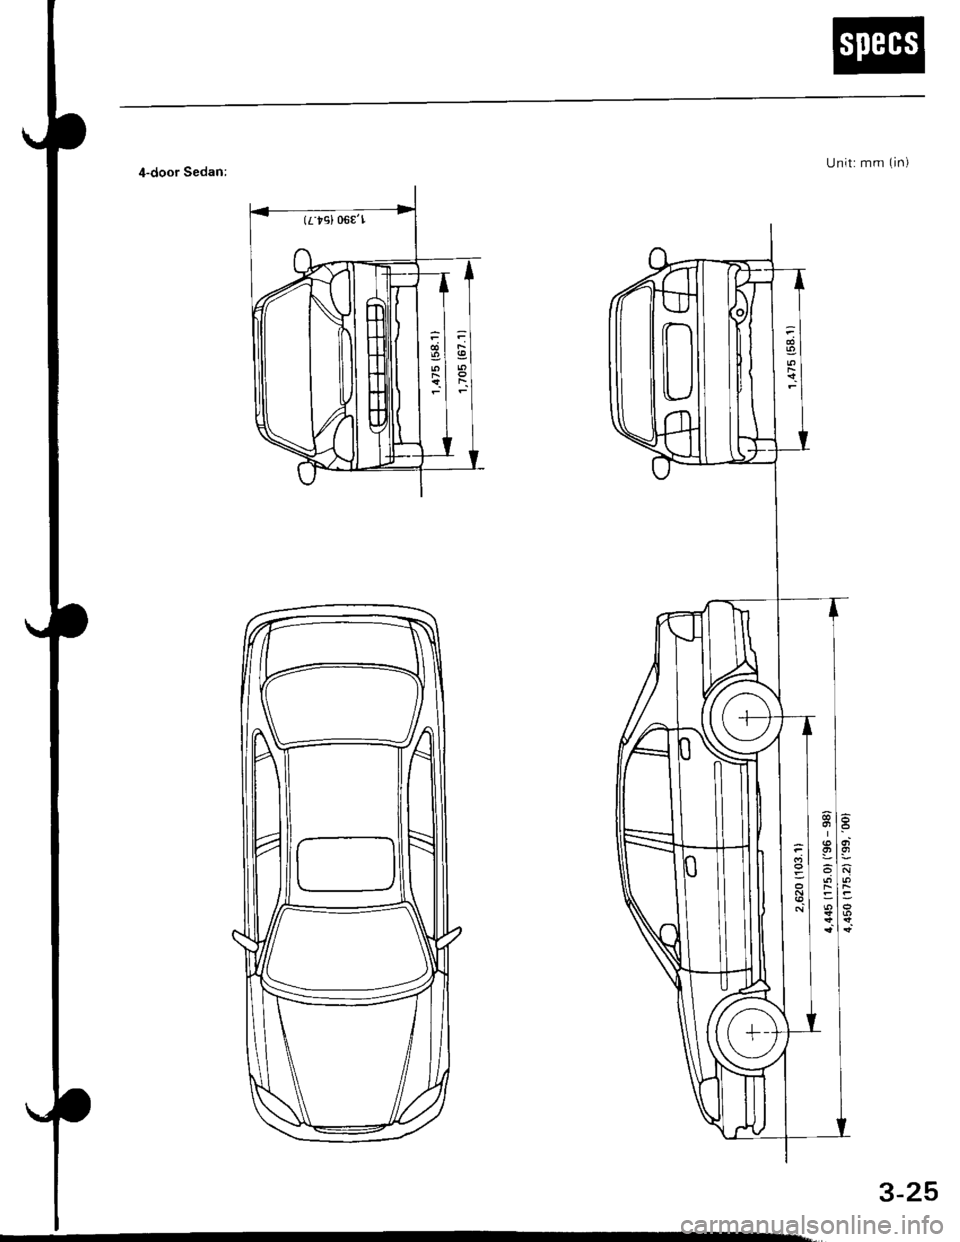 HONDA CIVIC 1999 6.G Repair Manual (rtsl 06€l
U nit: mm (in)4-door Sedan:
3-25 